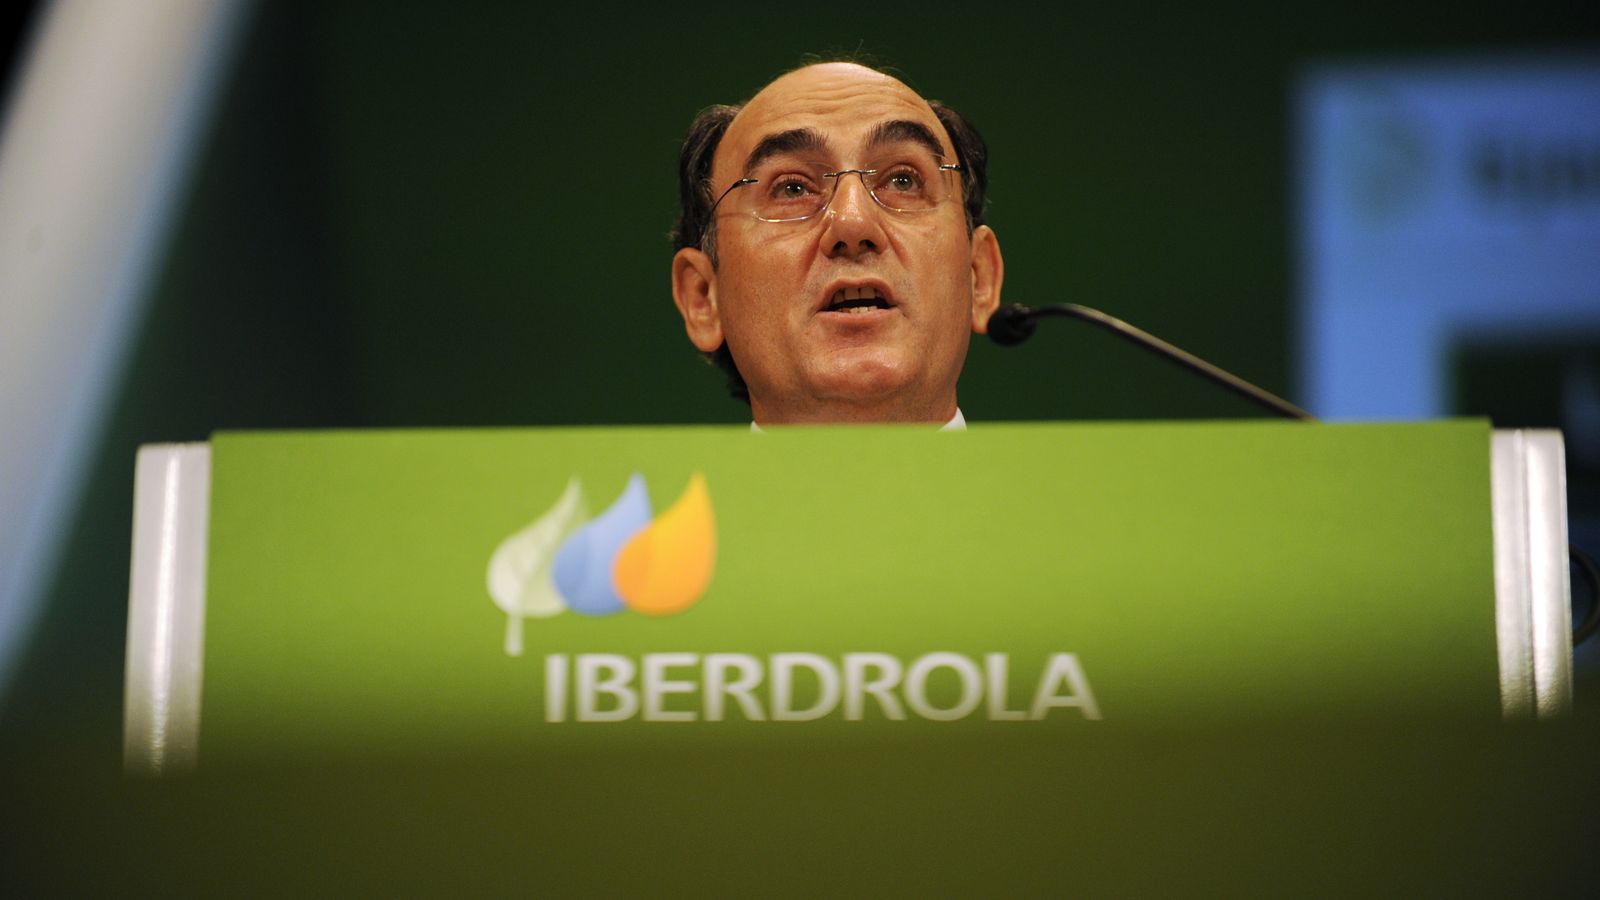 Foto: El presidente de Iberdrola, Ignacio Sánchez Galán. (Reuters)